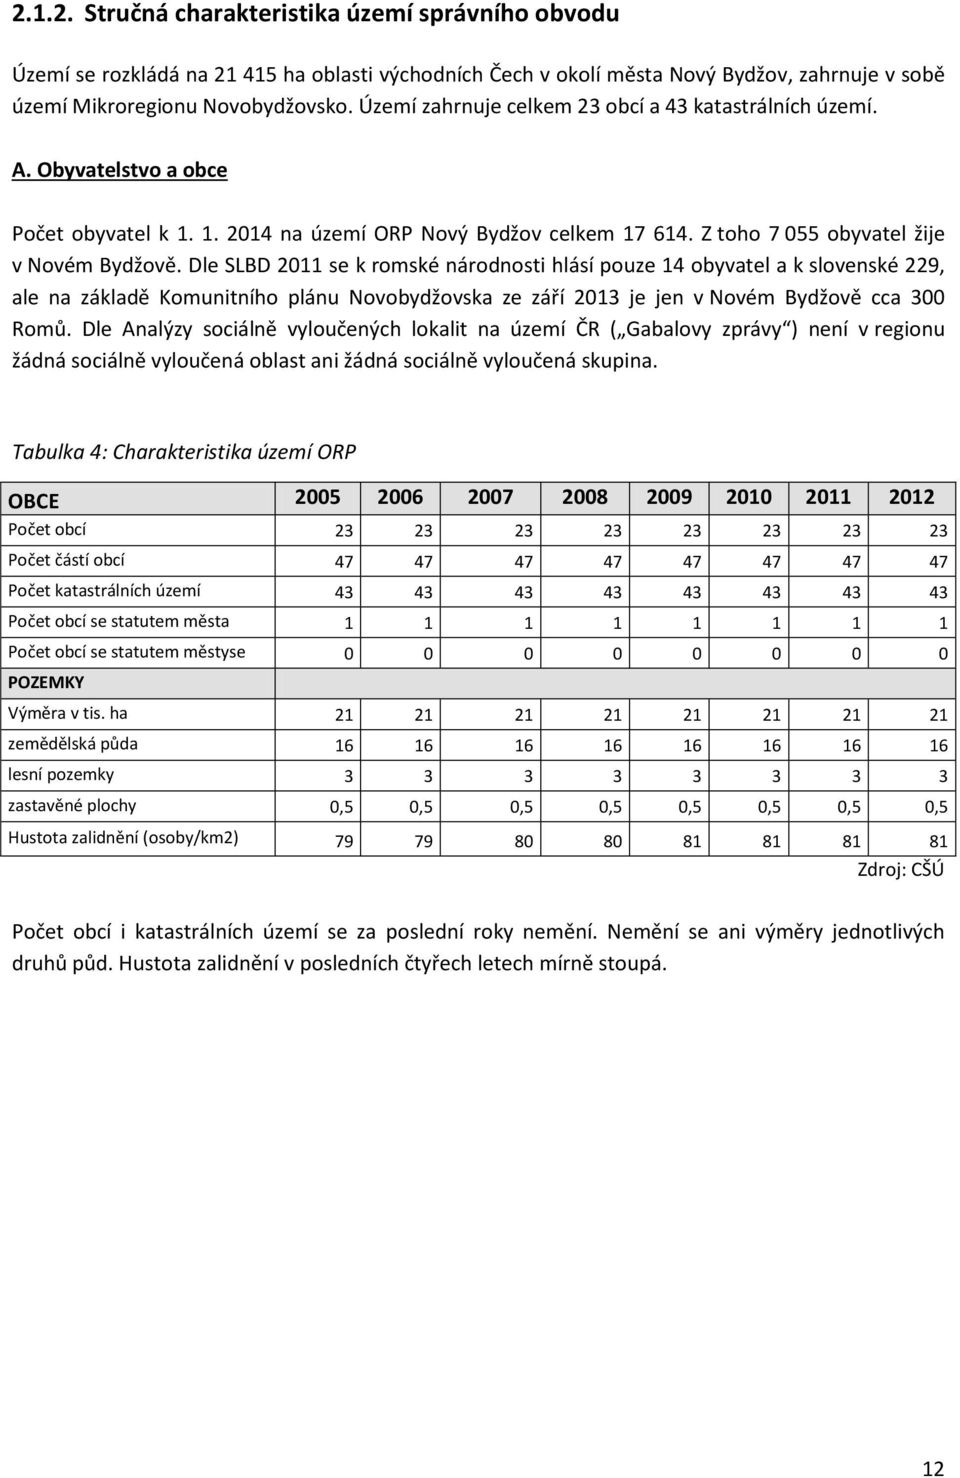 Dle SLBD 2011 se k romské národnosti hlásí pouze 14 obyvatel a k slovenské 229, ale na základě Komunitního plánu Novobydžovska ze září 2013 je jen v Novém Bydžově cca 300 Romů.